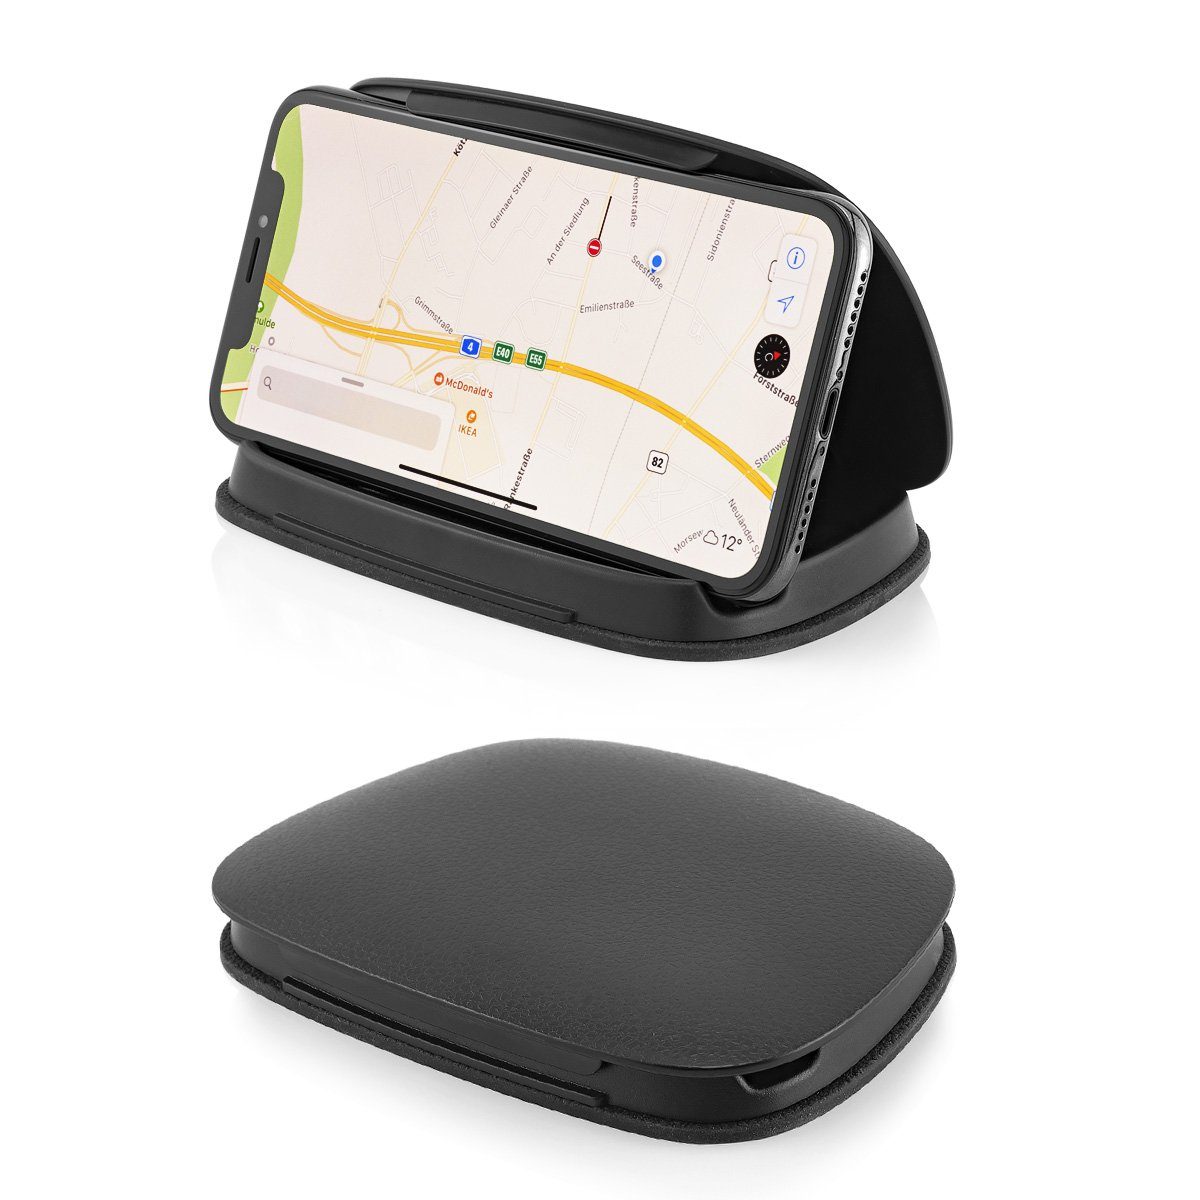 MidGard Magnet KFZ Getränkehalterung Autohalterung für Smartphone, Tablet  PC Smartphone-Halterung